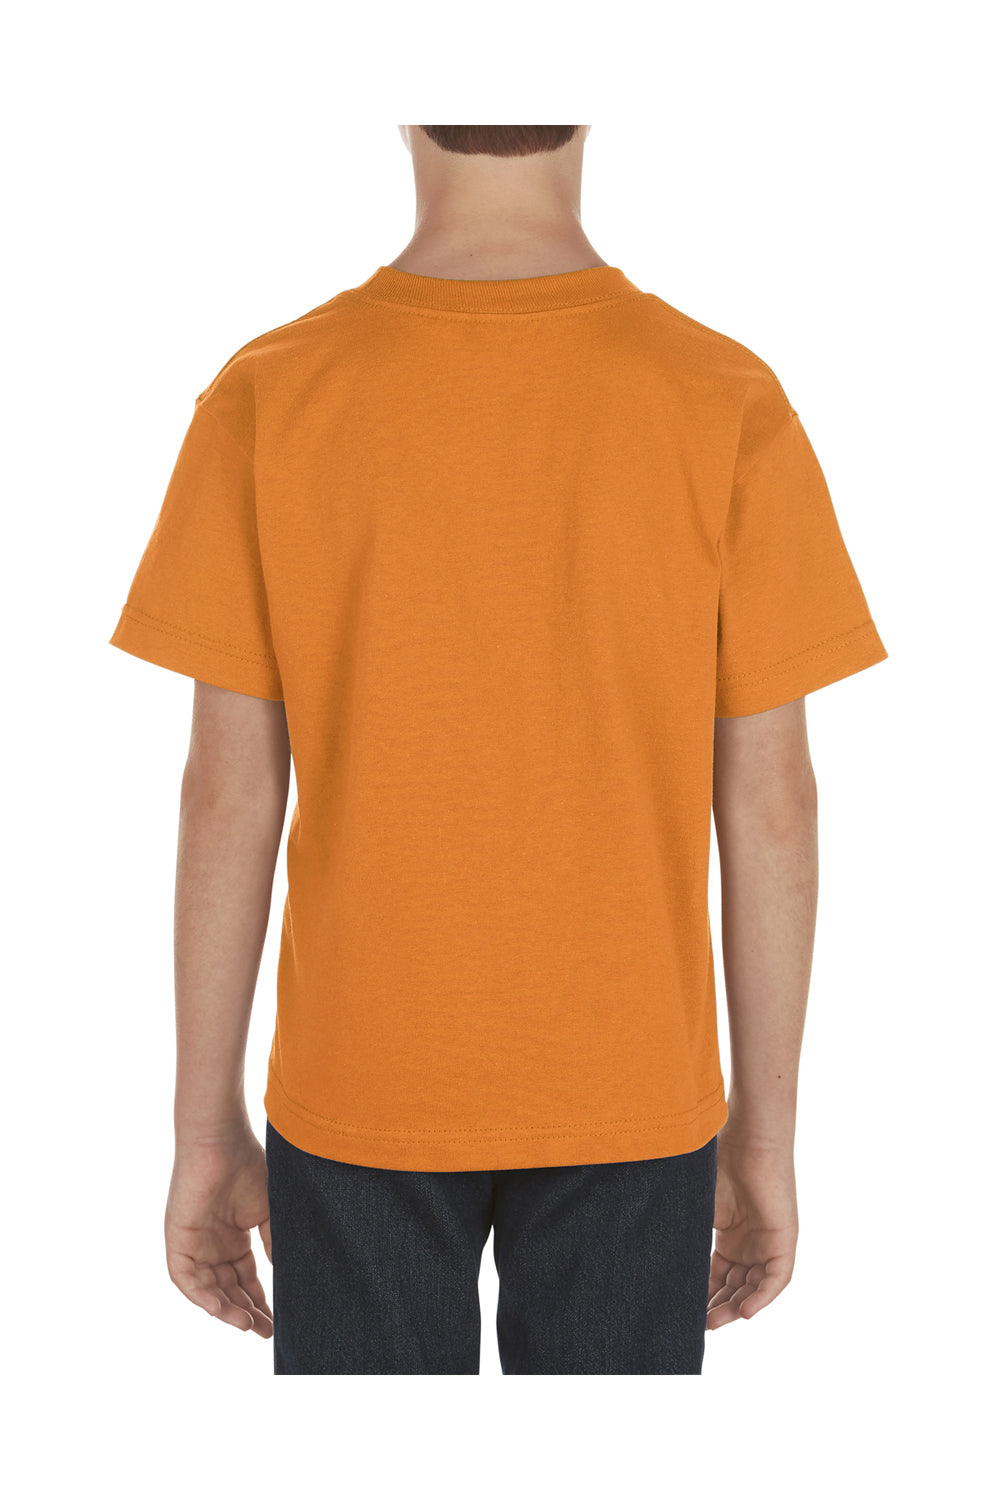 Alstyle AL3381 Youth Short Sleeve Crewneck T-Shirt Orange Back